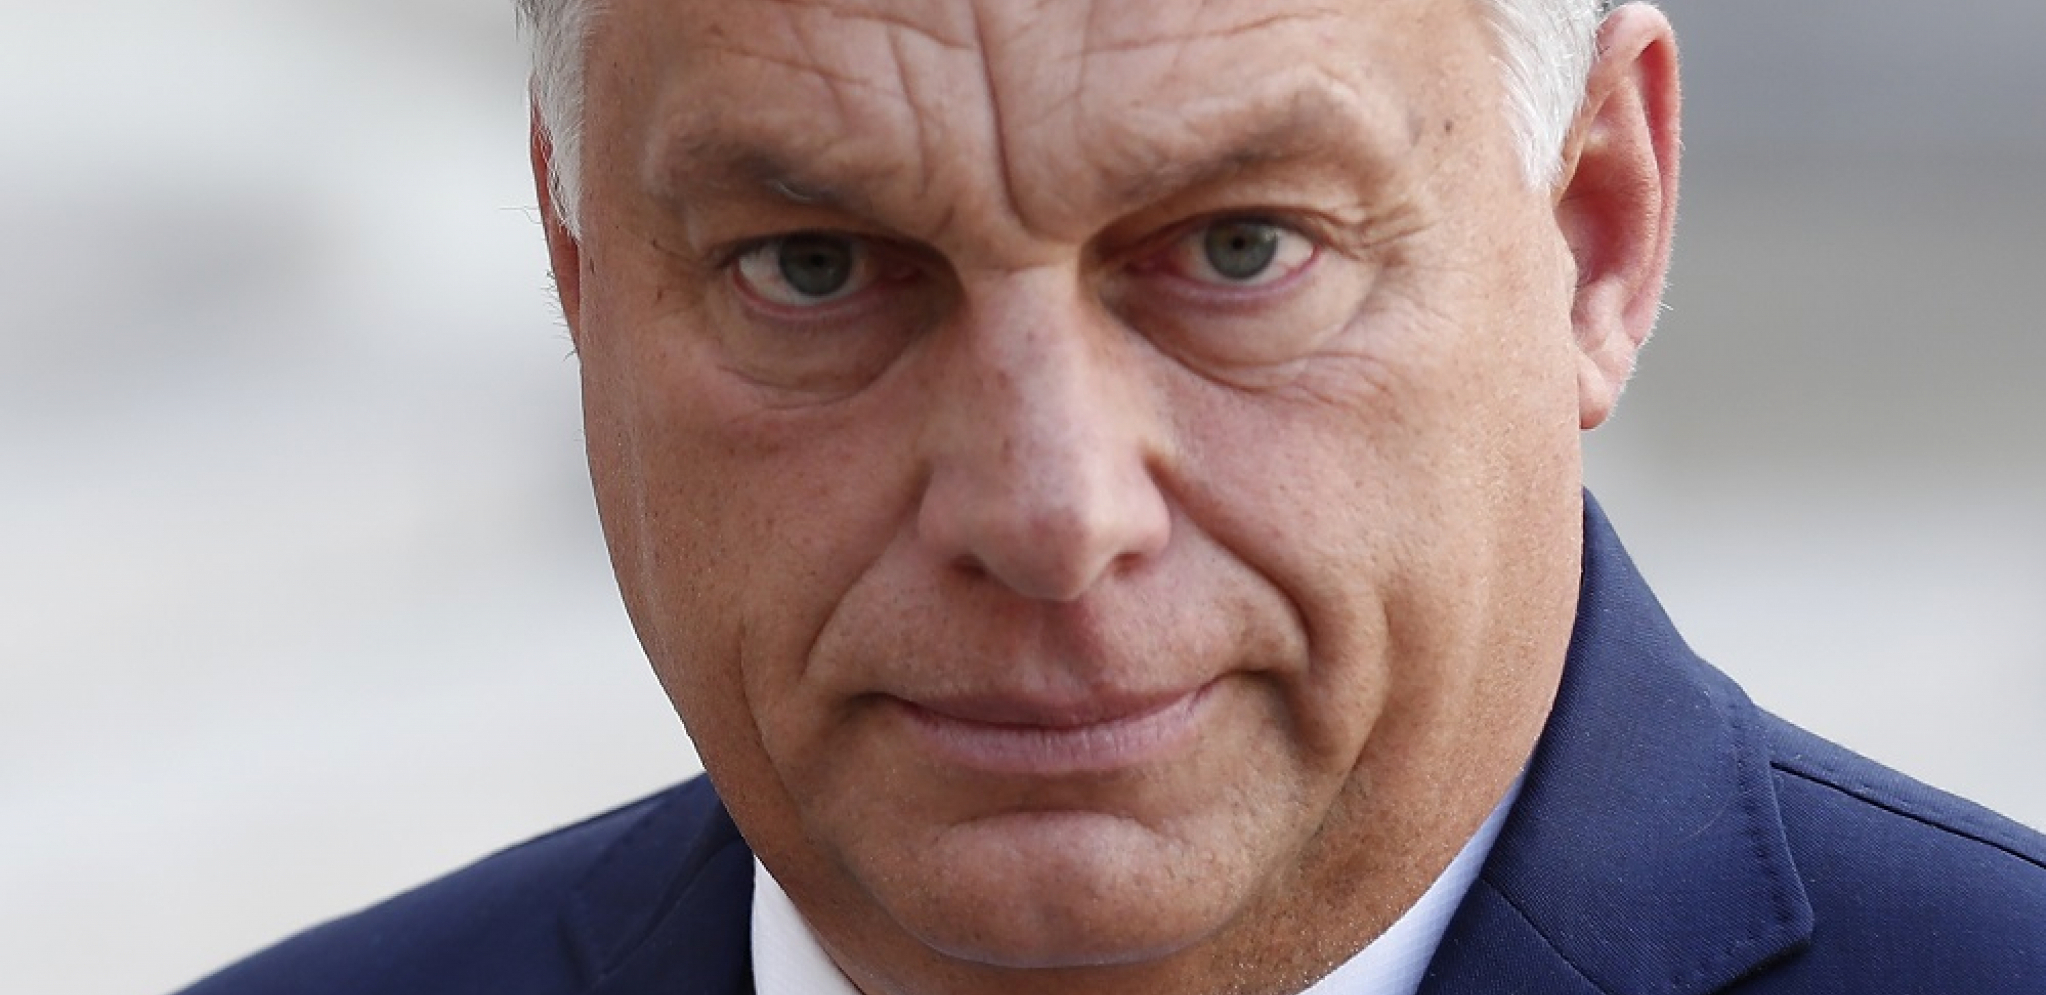 "NE DOLZI U OBZIR!" Orban lupio kontru Evropi, podržao Rusiju!